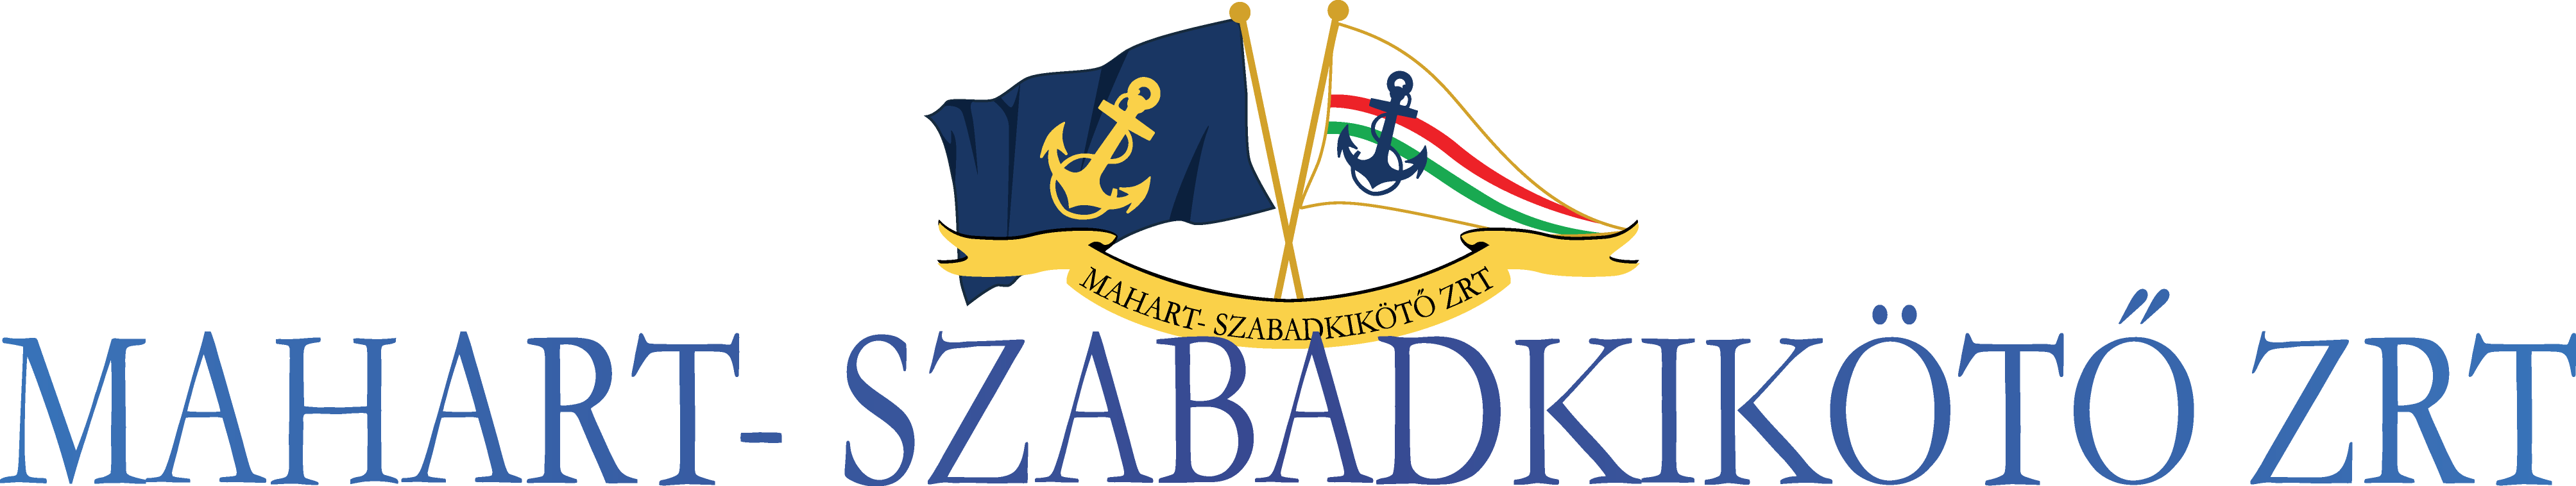 mahart logo